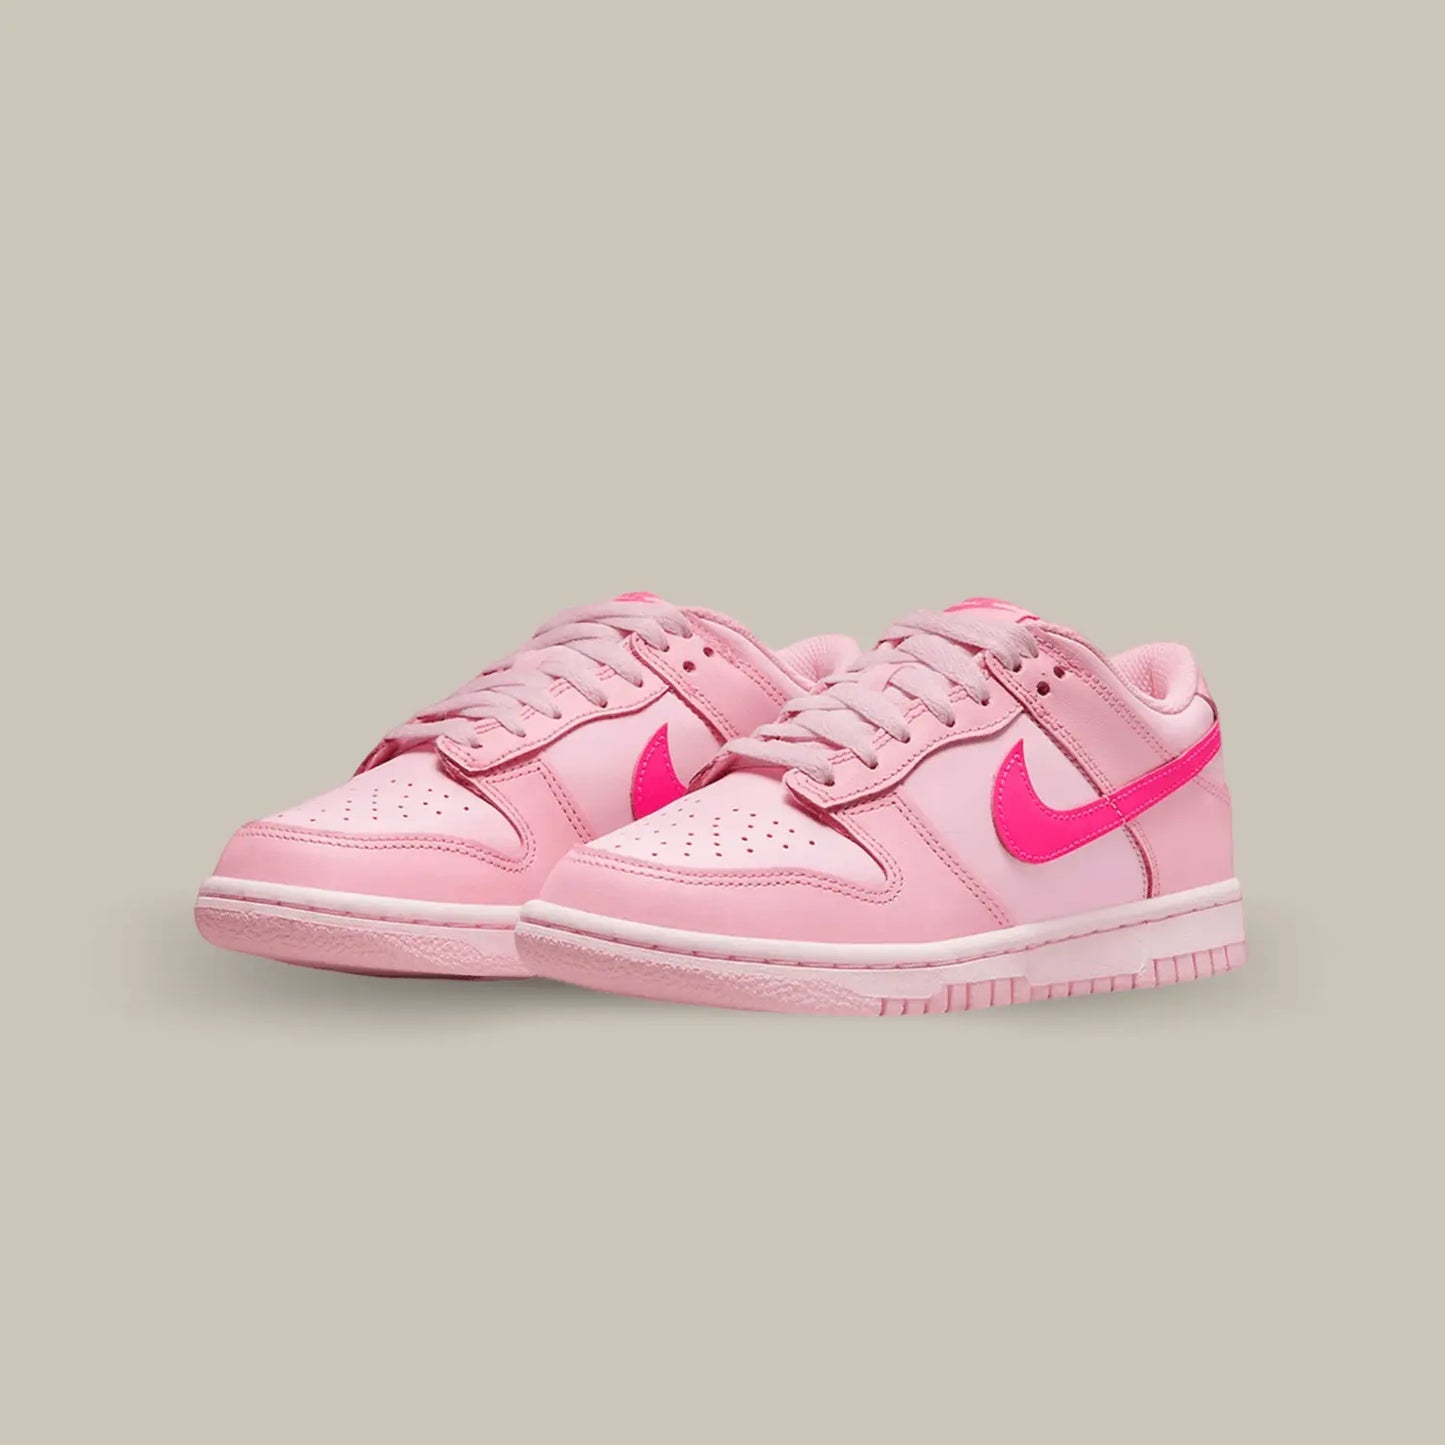 La Nike Dunk Low Triple Pink est une sneaker emblématique qui incarne l'équilibre parfait entre le style rétro et la modernité. Cette chaussure audacieuse présente une palette de couleurs captivante qui saura attirer tous les regards. Arborant un design classique de la silhouette Dunk Low, cette version Triple Pink ajoute une touche de fraîcheur et de féminité à votre garde-robe.